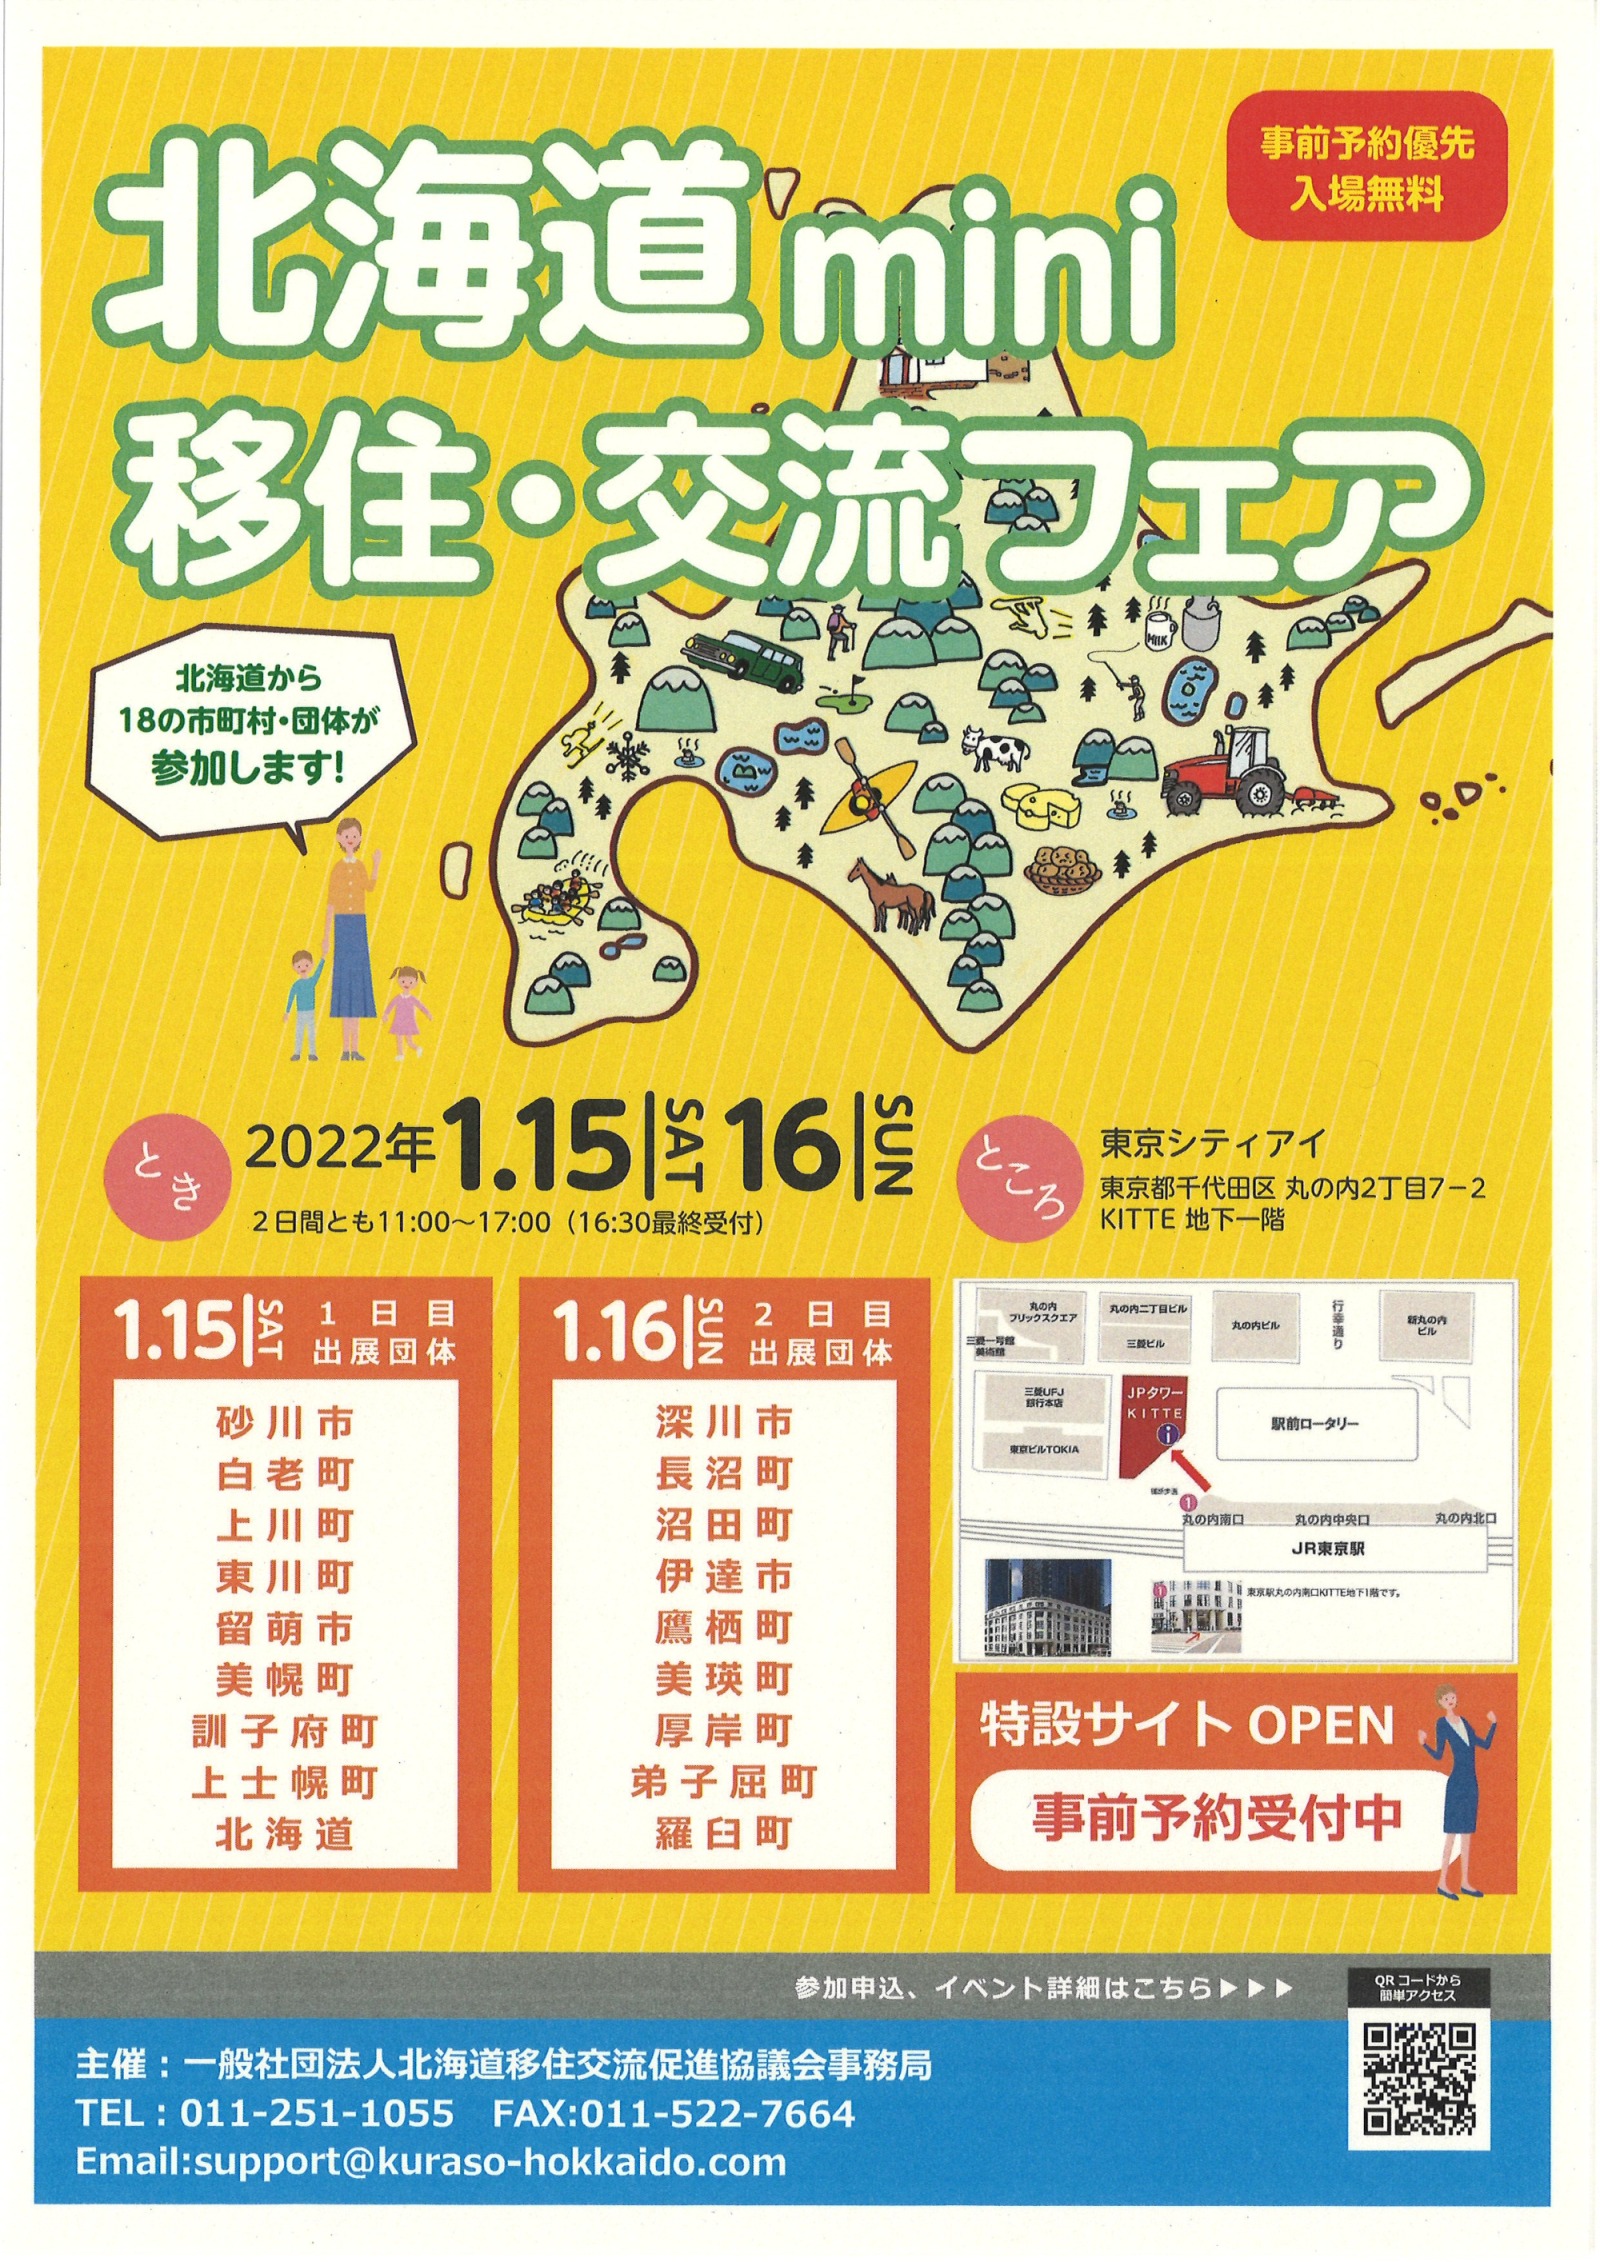 【東京開催】北海道mini移住・交流フェアに出展します